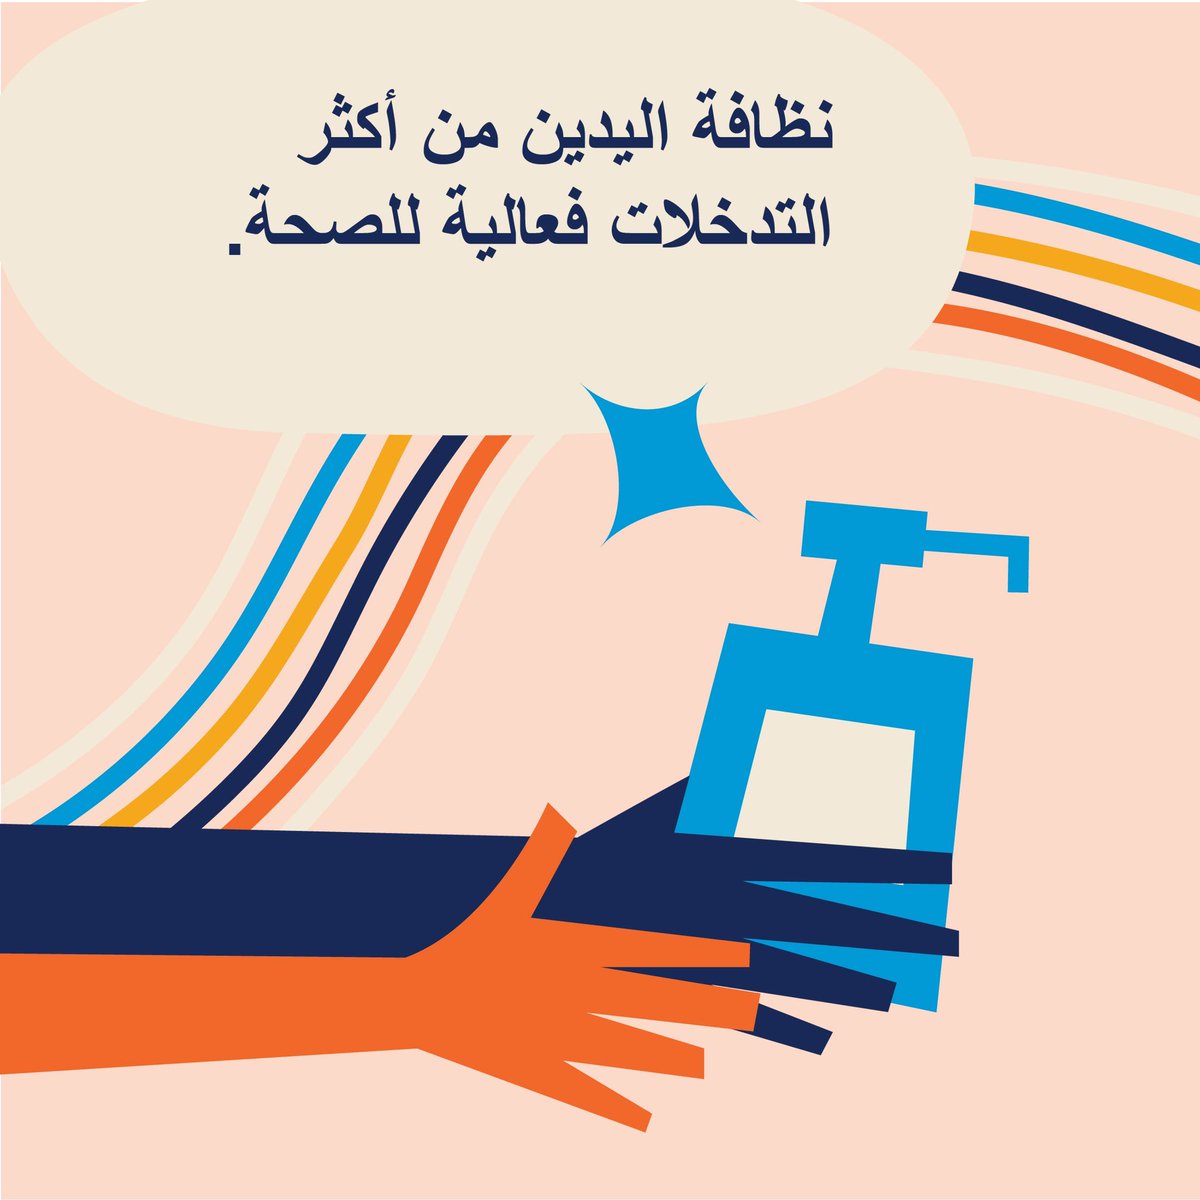 نظافة الأيدي تُنقِذ ملايين الأرواح كل عام عند إجرائها في اللحظات المناسبة وبالطريقة الصحيحة أثناء تقديم الرعاية الصحية. والرعاية النظيفة تحمي كلًا من المرضى والعاملين الصحيين. #اليوم_العالمي_لنظافة_الأيدي أنقذوا الأرواح، نظّفوا أيديكم!